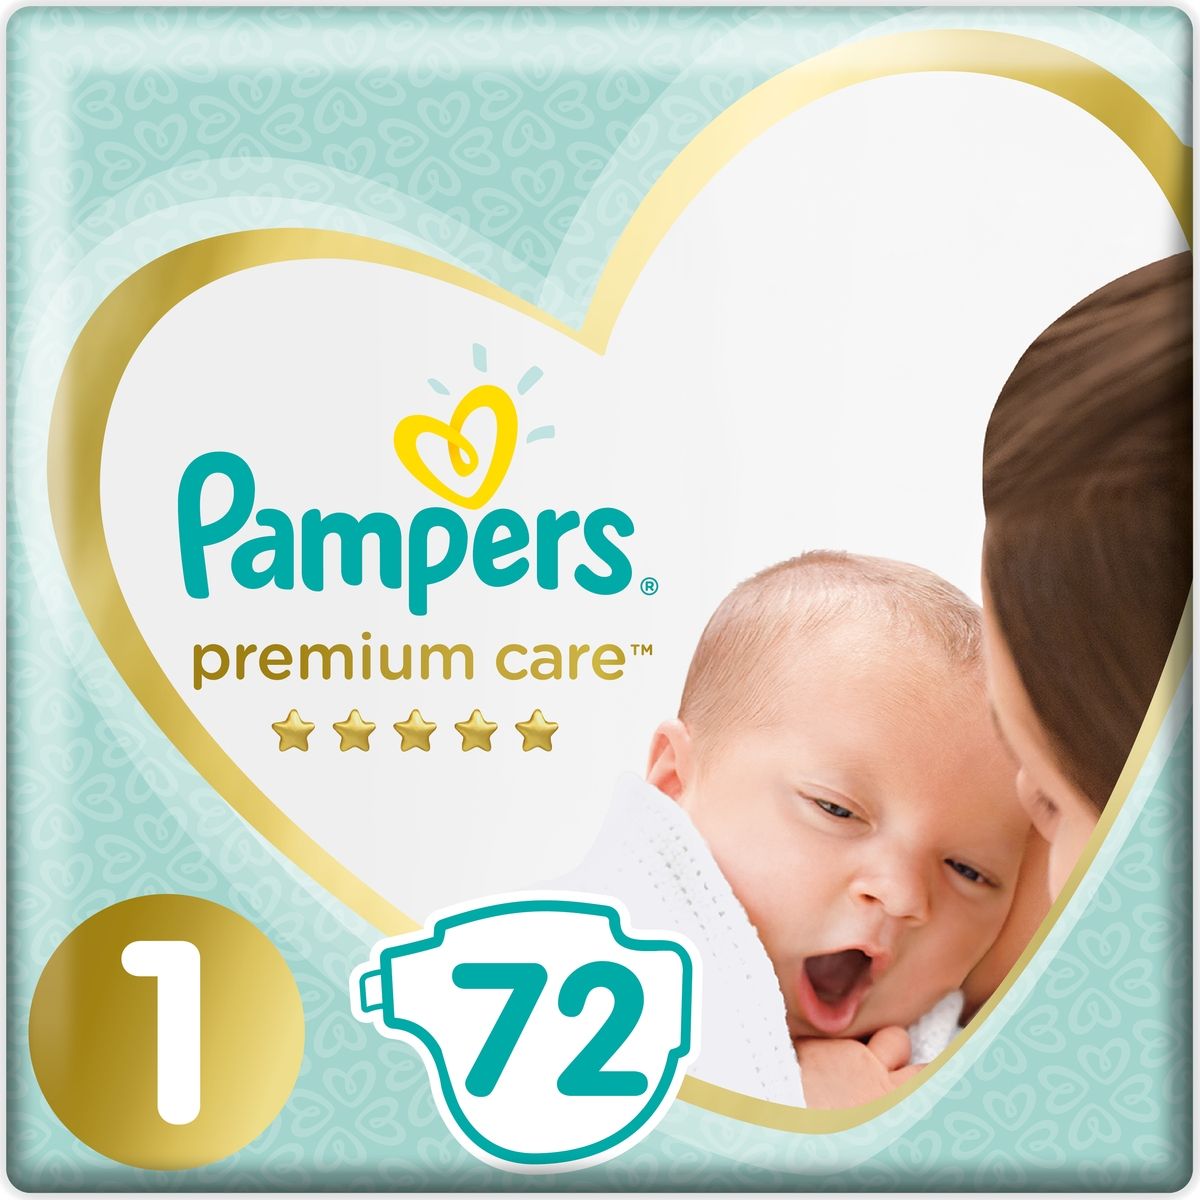 Pampers  Premium Care 2-5  ( 1) 72 